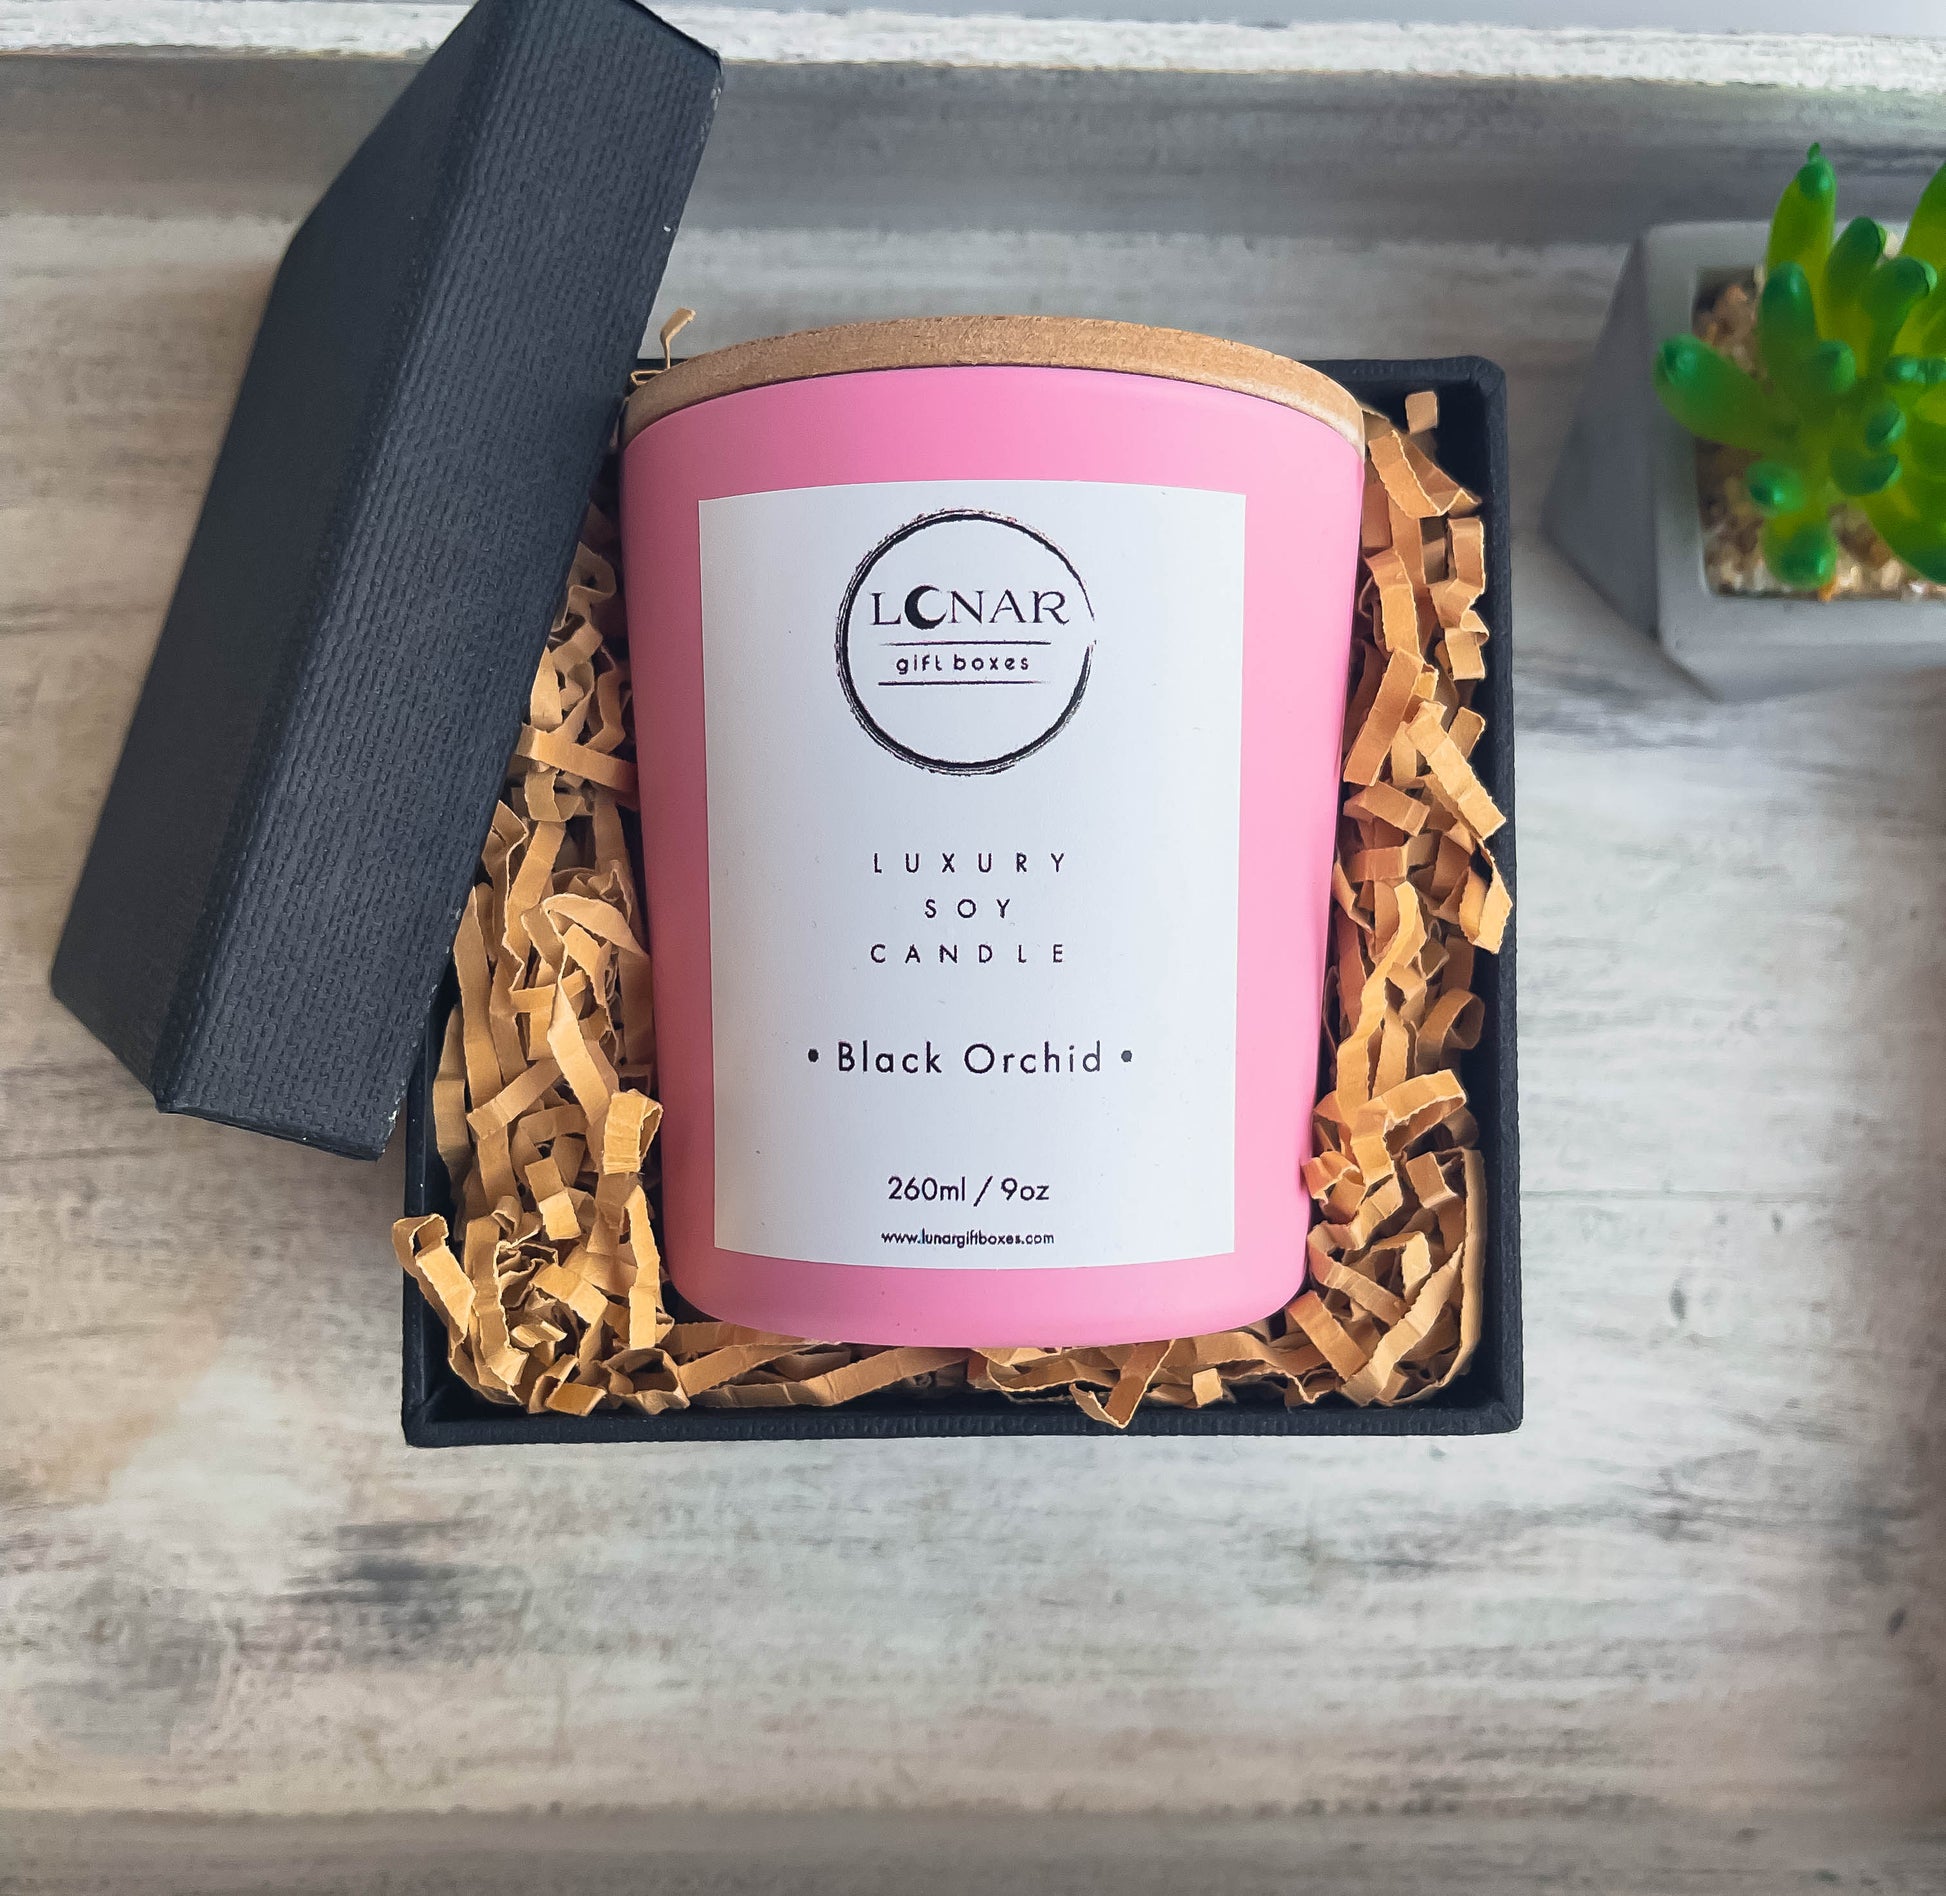 αρωματικό κερί σόγιας με ξυλινο φυτίλι ξύλινο καπακι σε ροζ γυαλινο δοχείο  